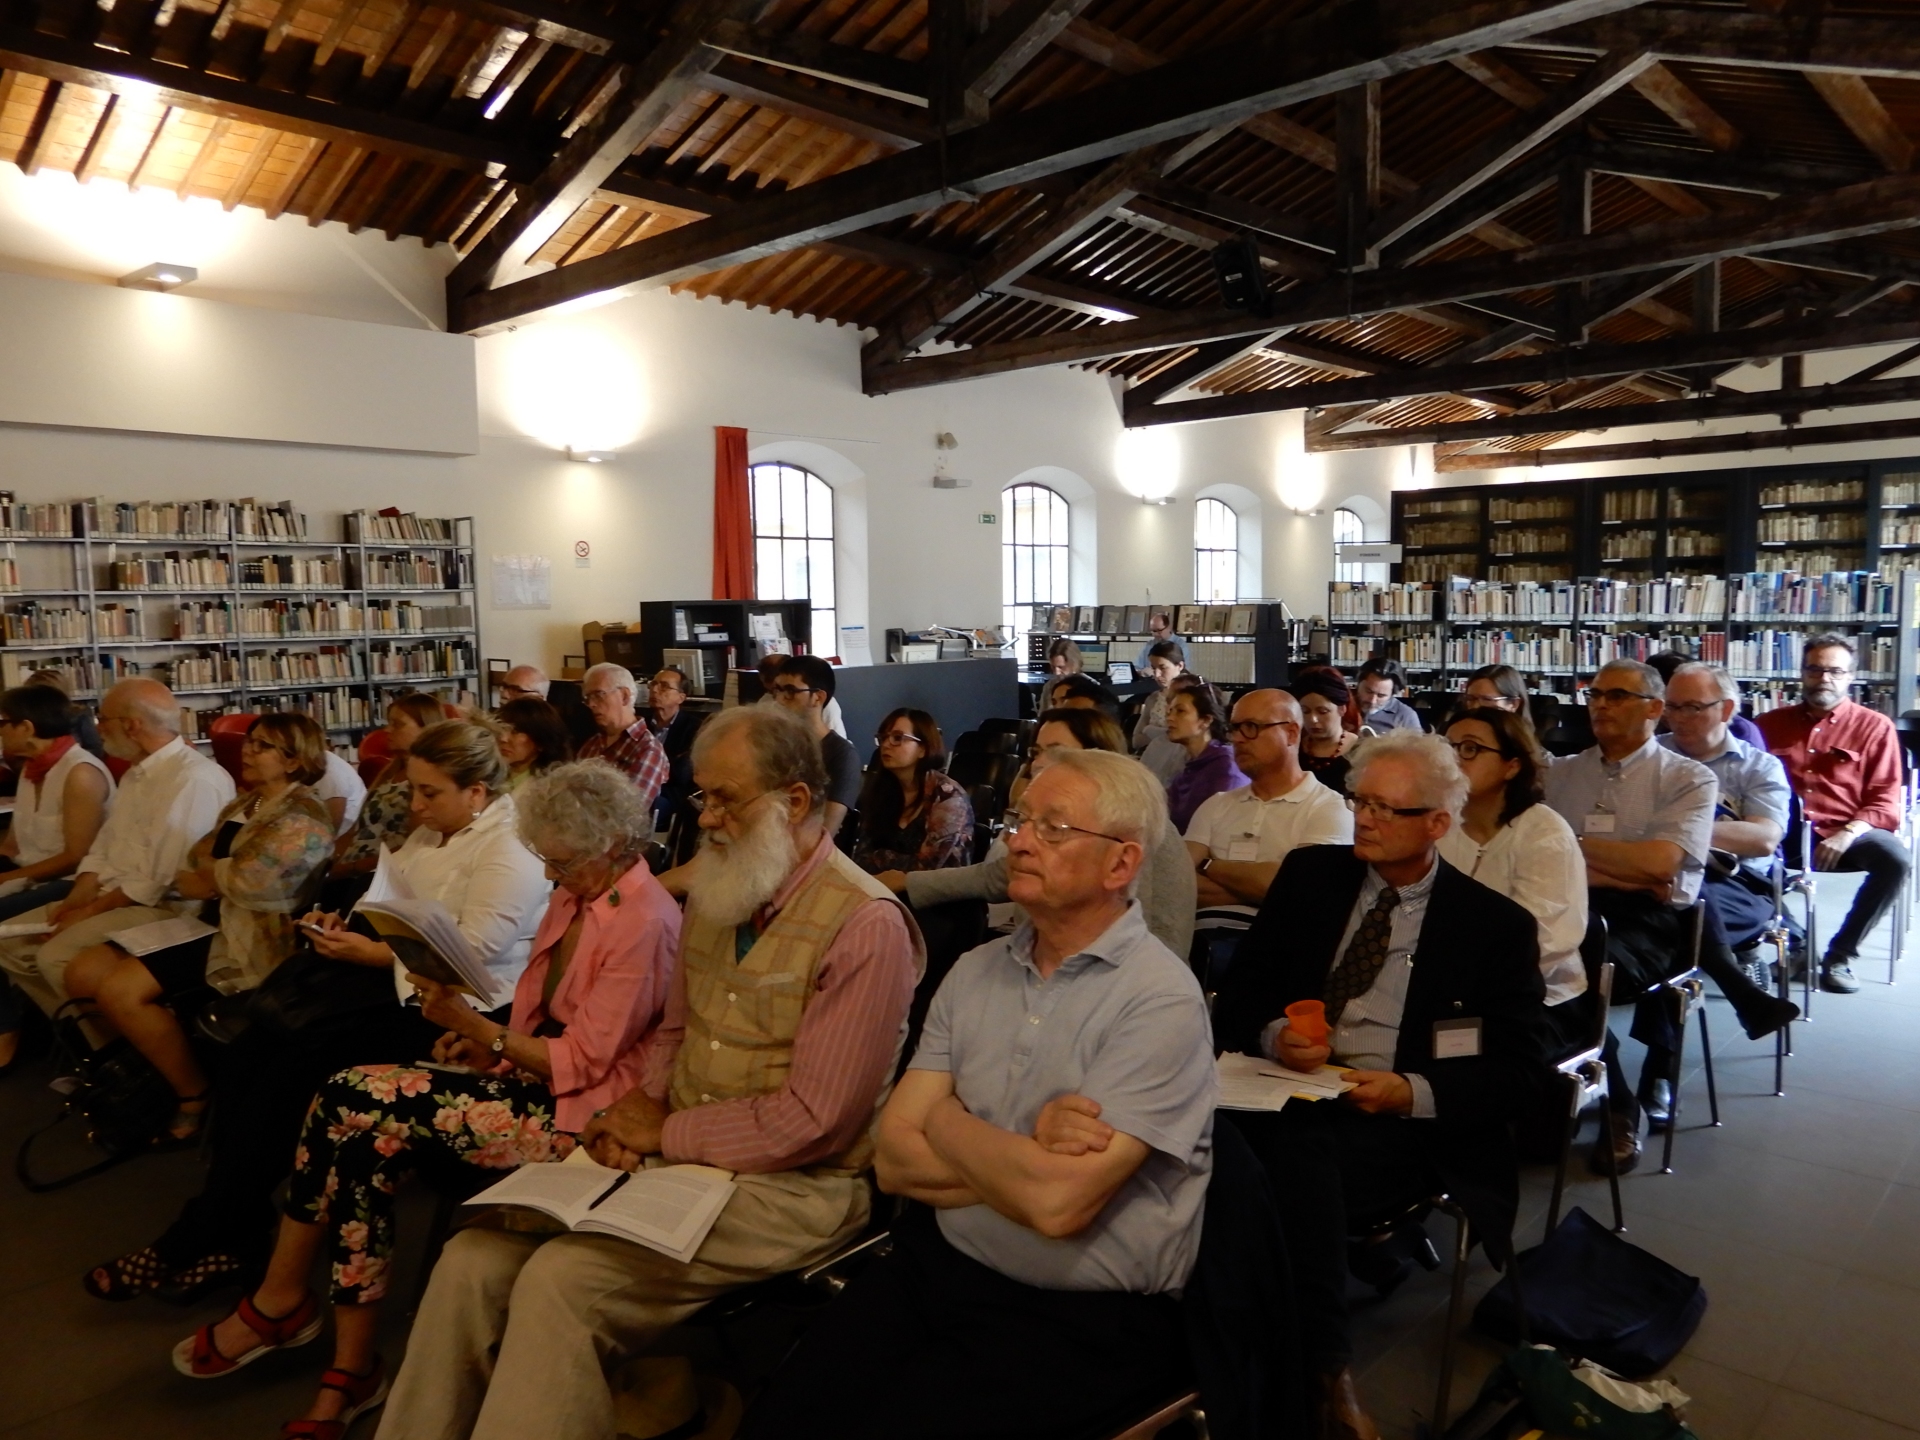 Terza giornata del convegno internazionale di storia postale, presso la biblioteca “Alessandro Lazzerini” di Prato.